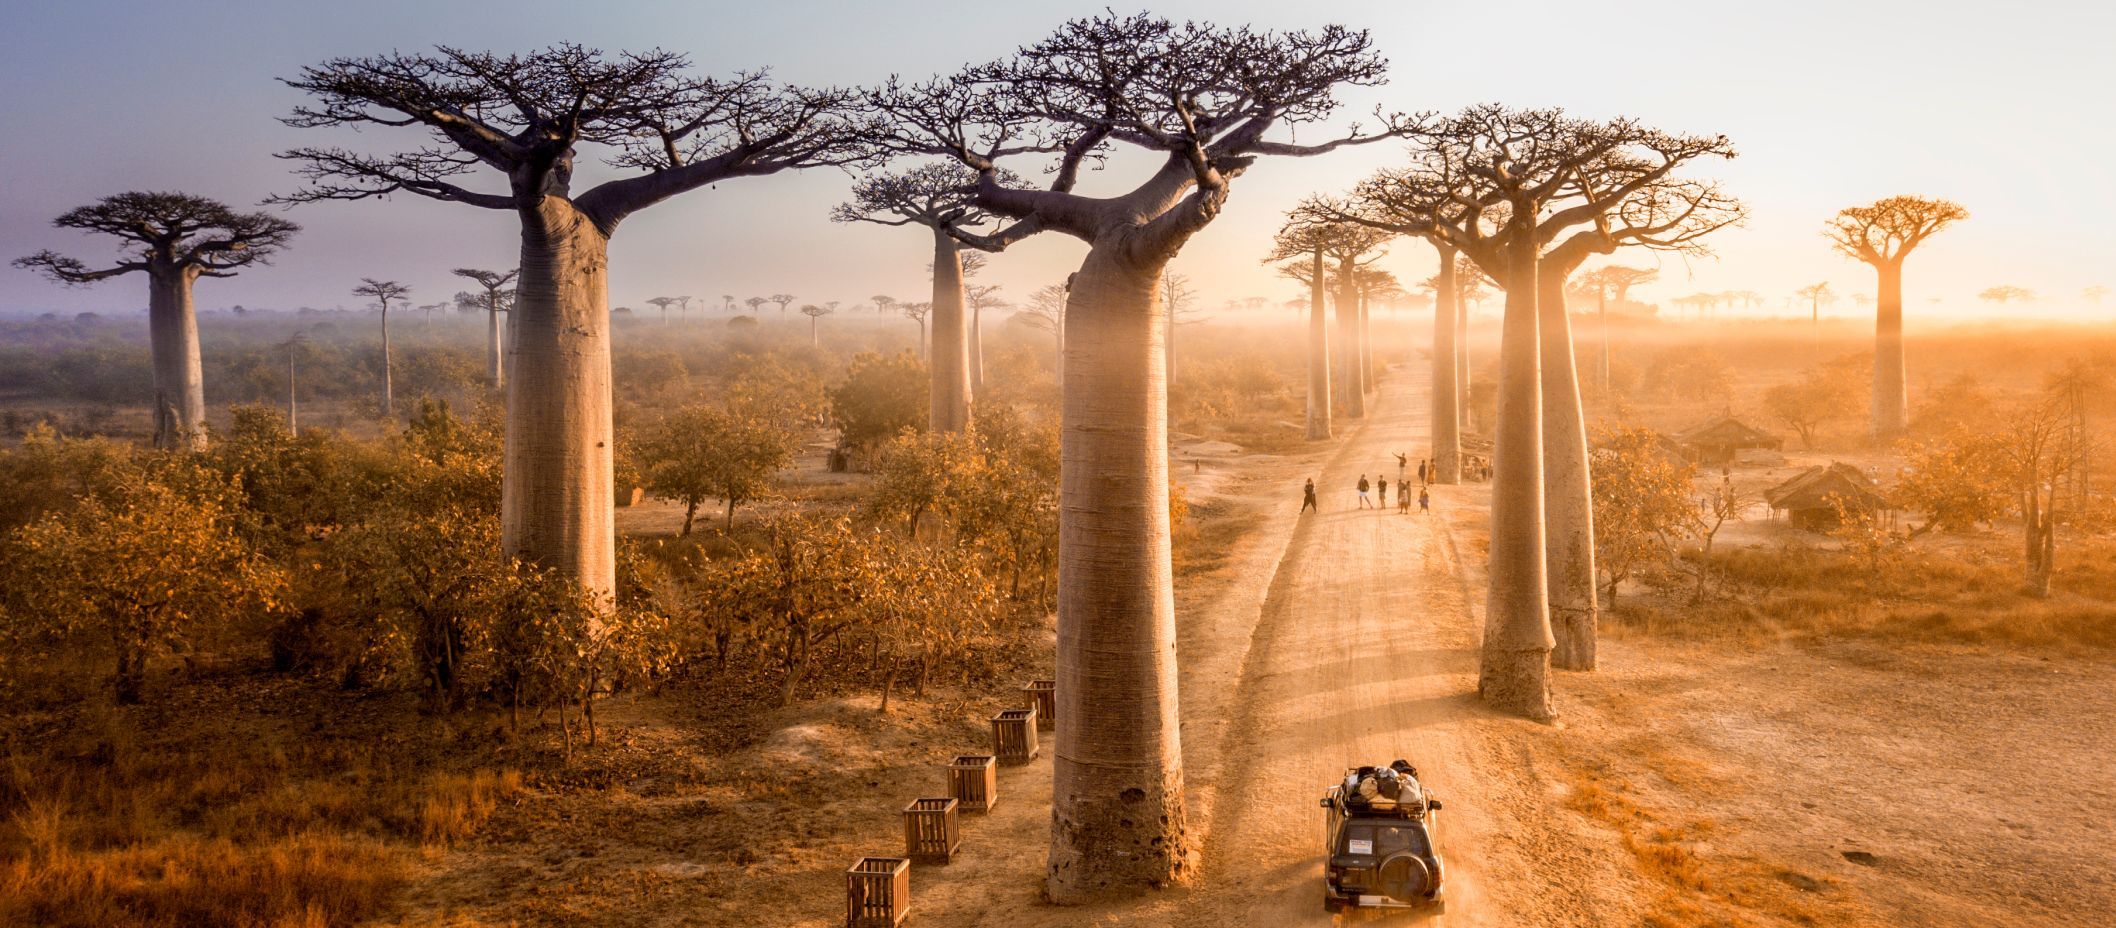  Madagaskar-Baobab-Allee.jpg 